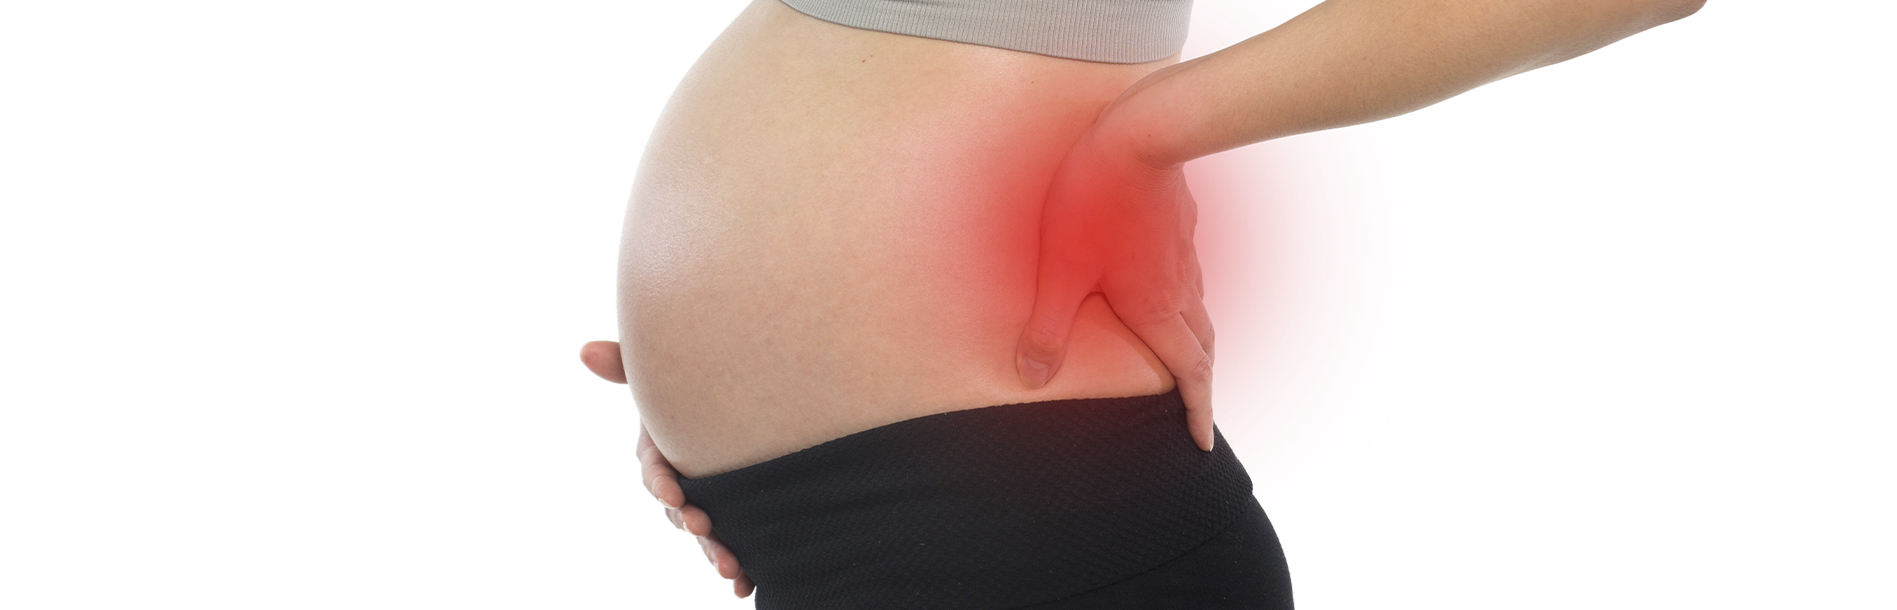 Como aliviar as dores nas costas na reta final da gravidez?